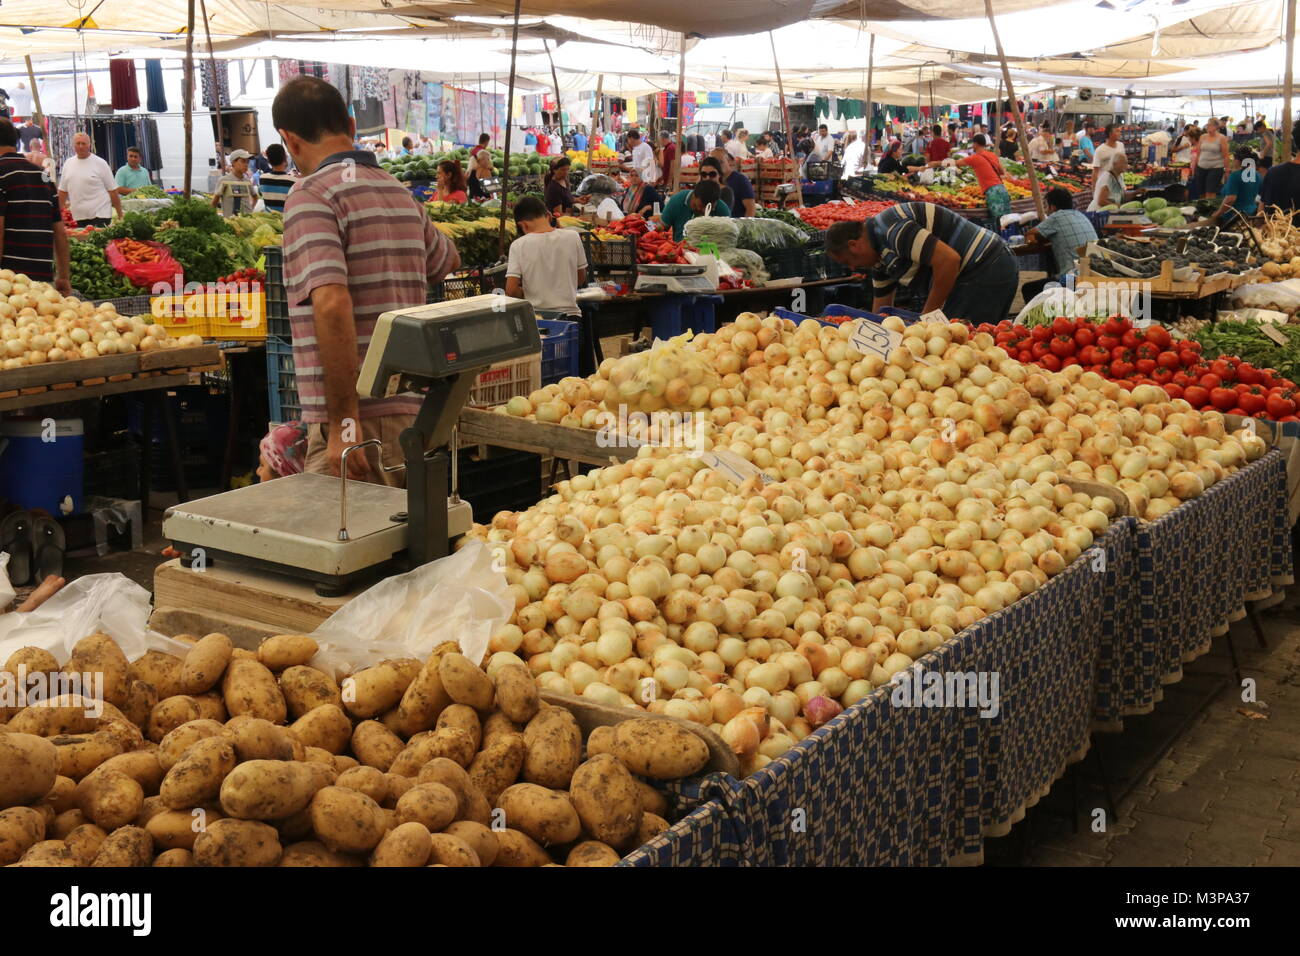 CALIS, TURQUIE - 6ème Août, 2017 : les fruits et légumes pour la vente au marché local dans la région de Calis, Turquie, 6 août 2017 Banque D'Images